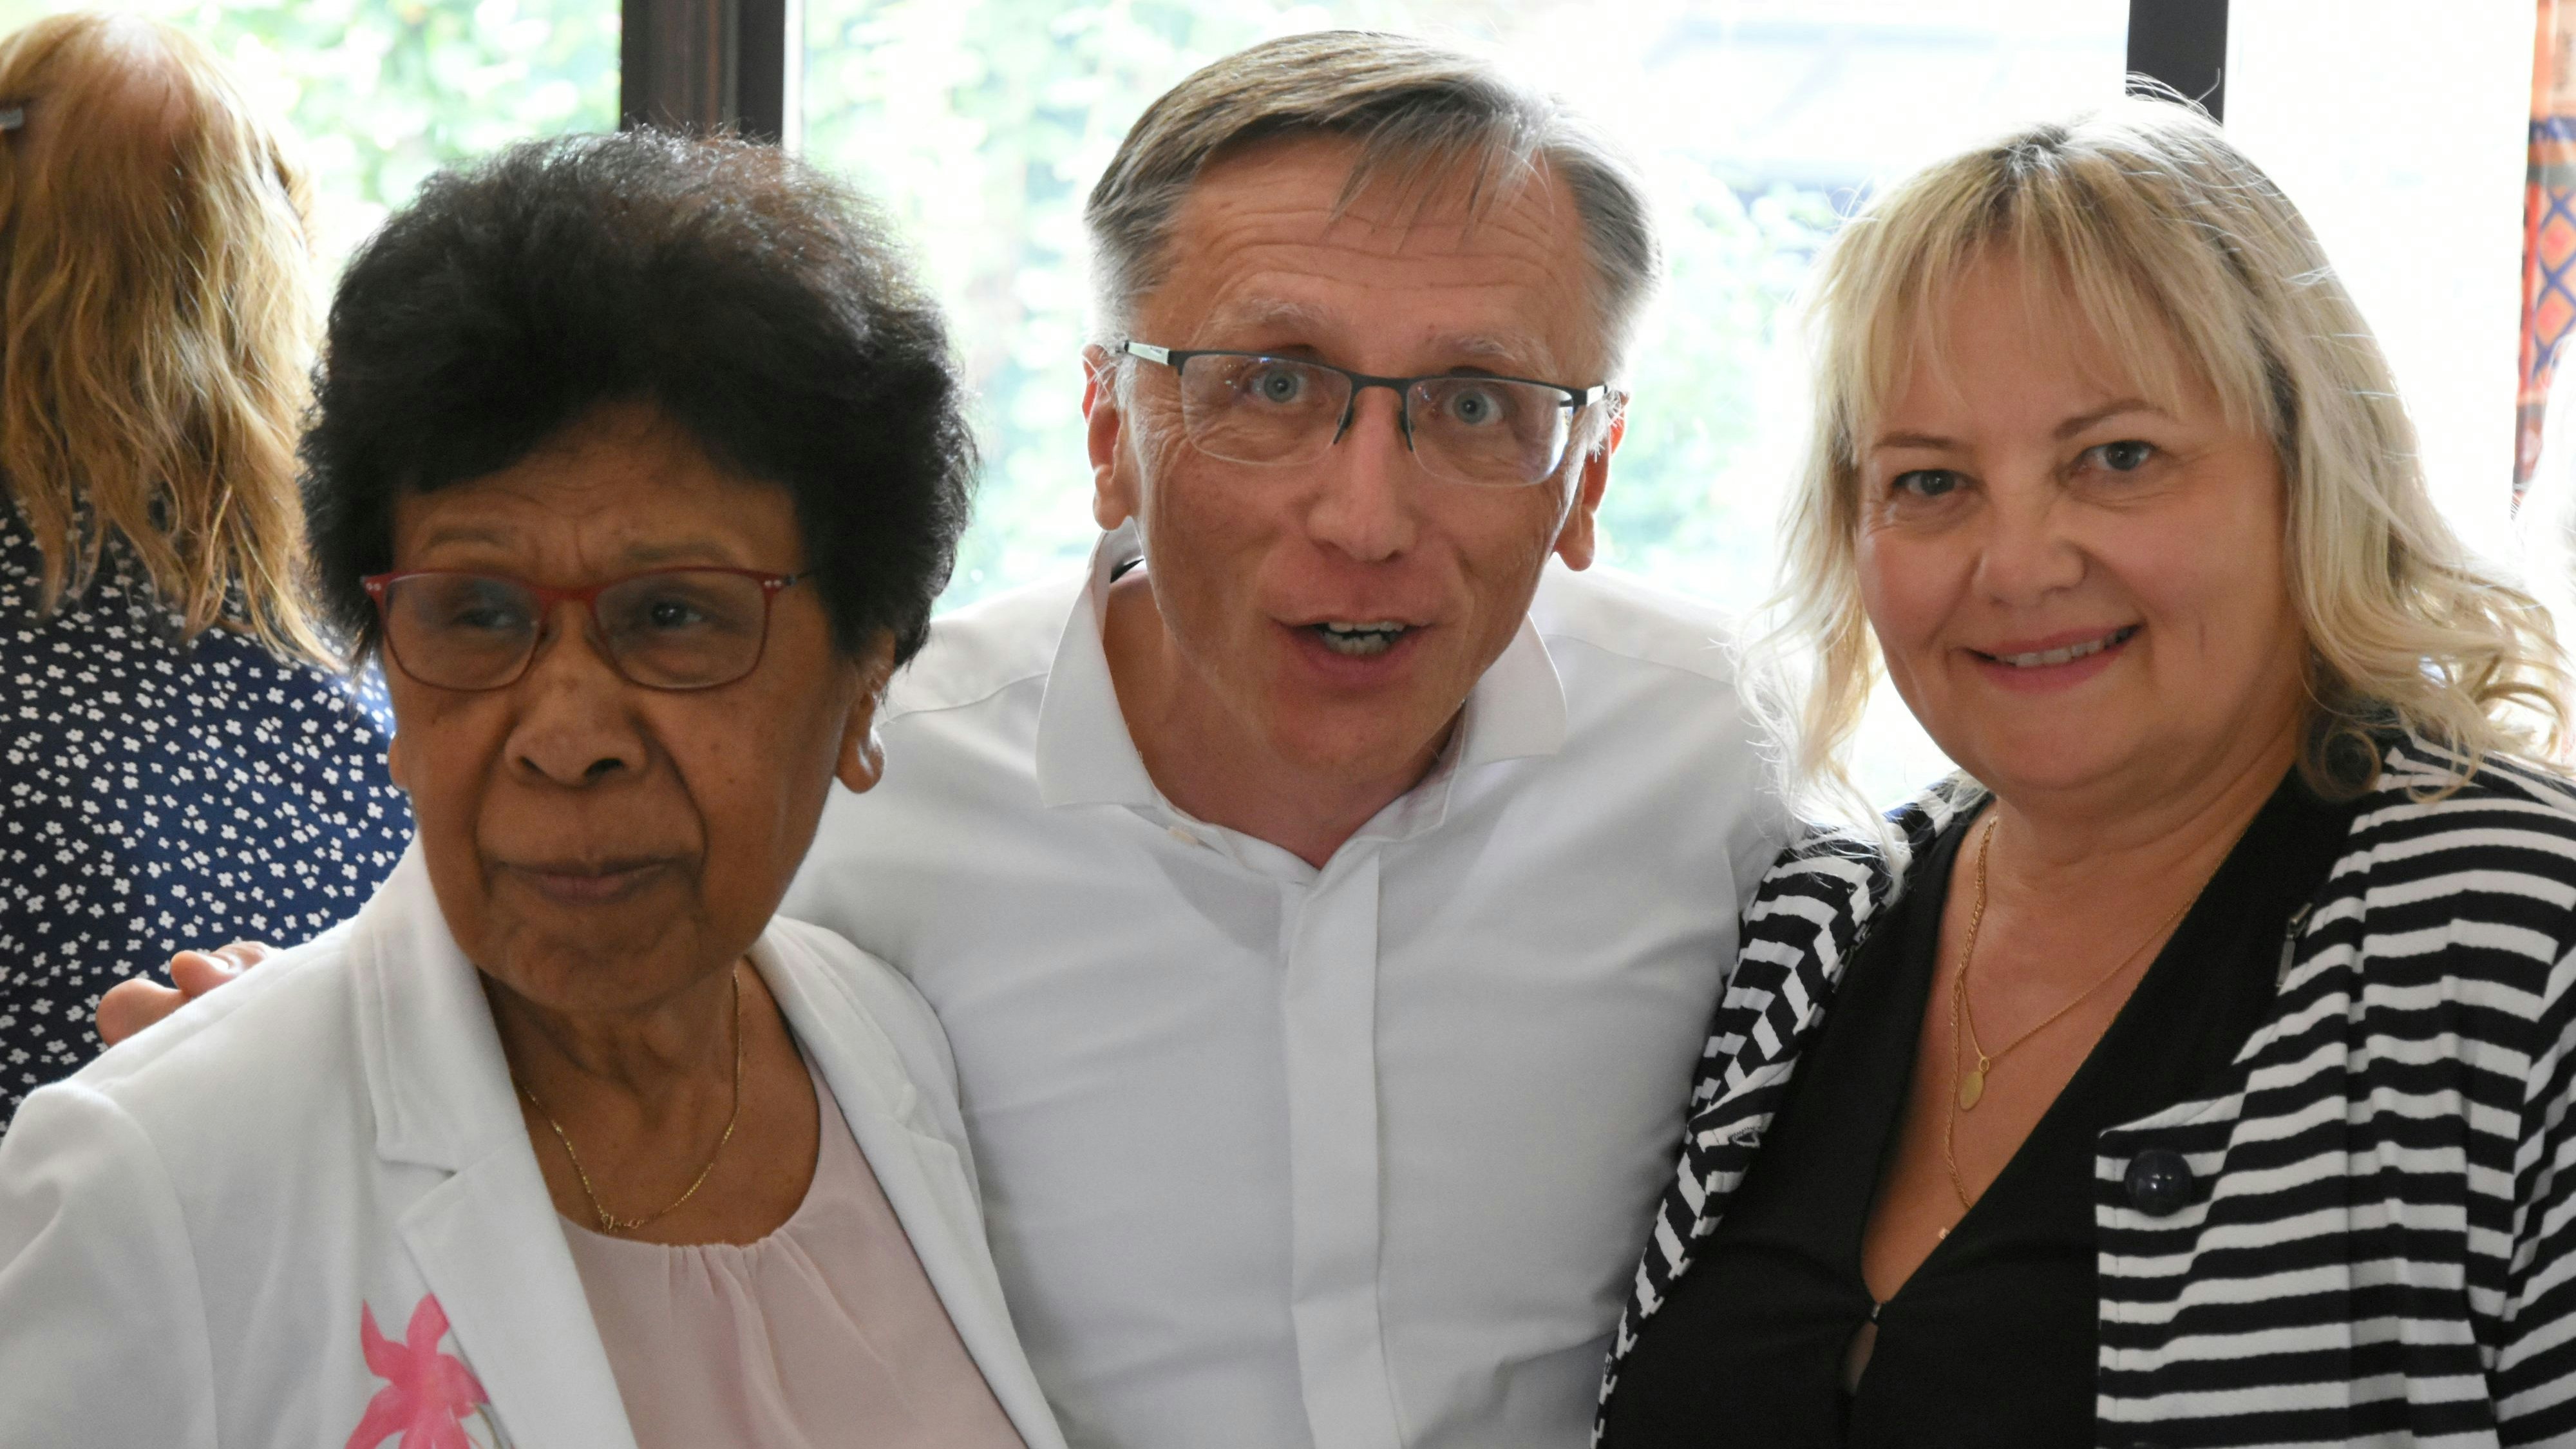 Abschied mit einem Lächeln: Ann Douwes und Lilli Miller (rechts) vom Linderner Kirchenrat bedankten sich bei Pastor Jürgen Schwartz. Foto: Kock